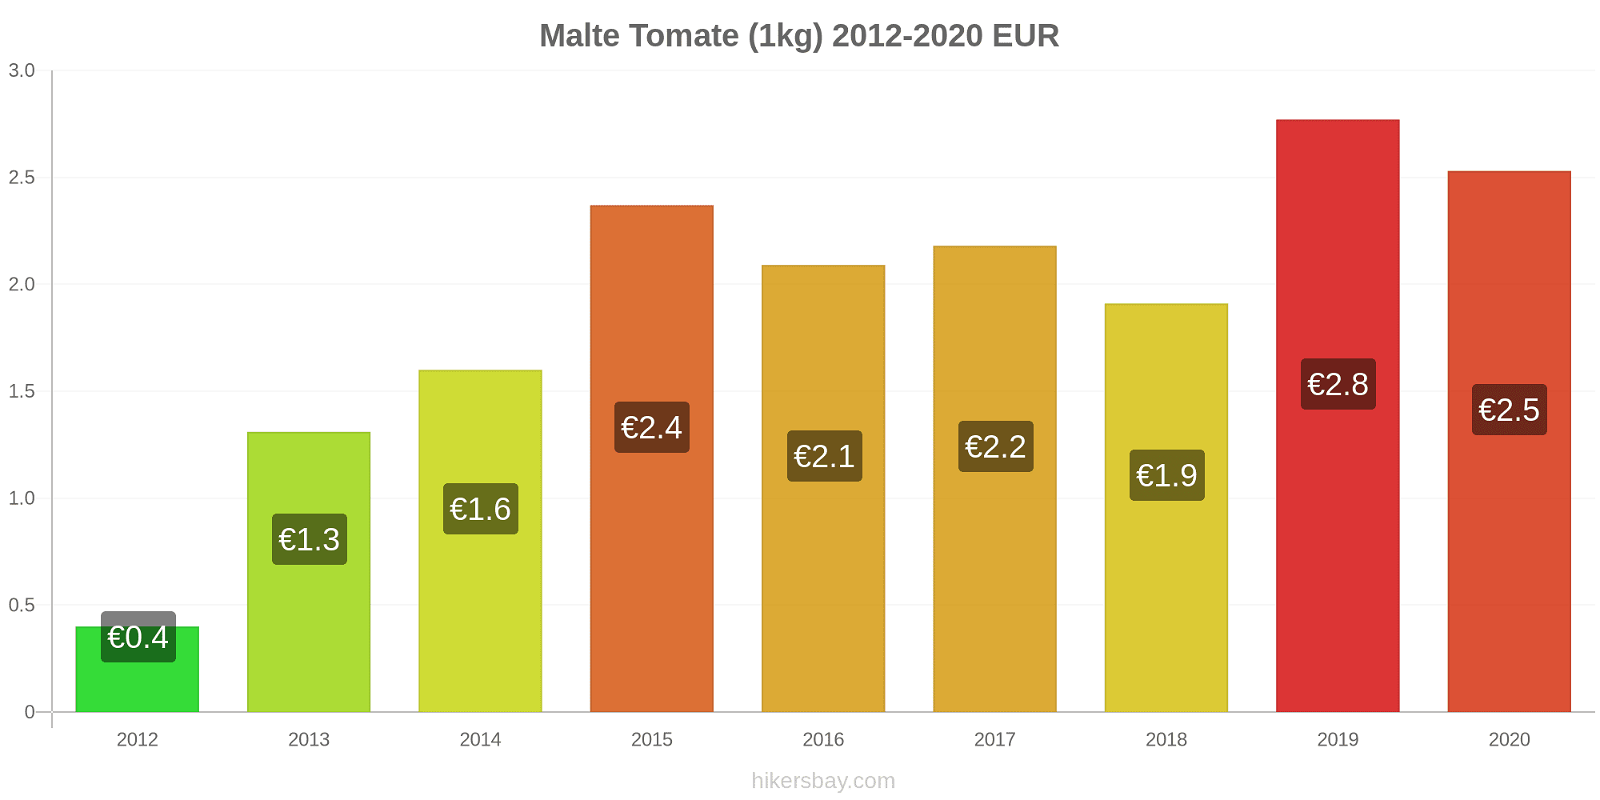 Malte changements de prix Tomate (1kg) hikersbay.com